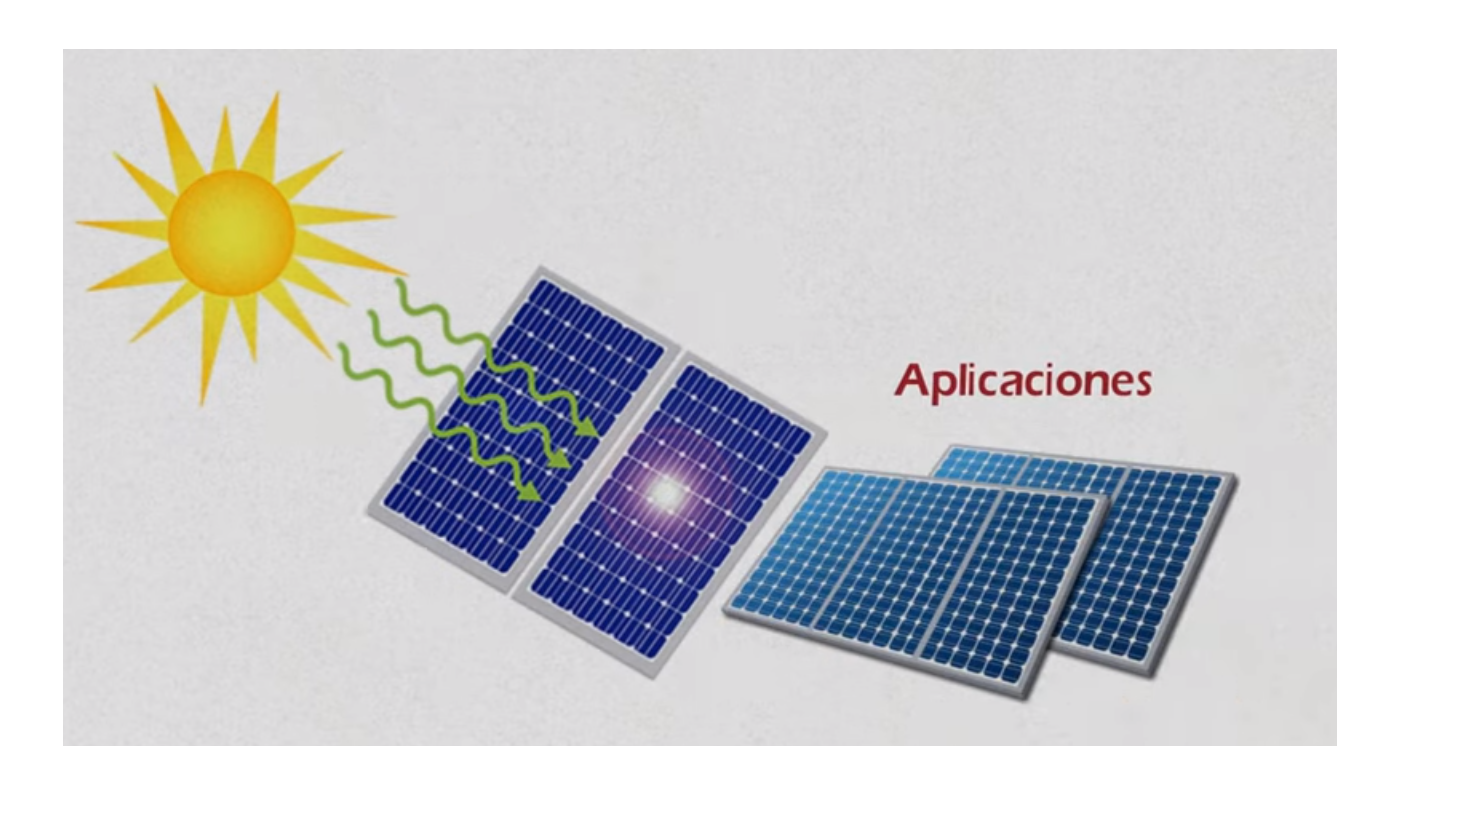 Cómo funcionan las placas solares?